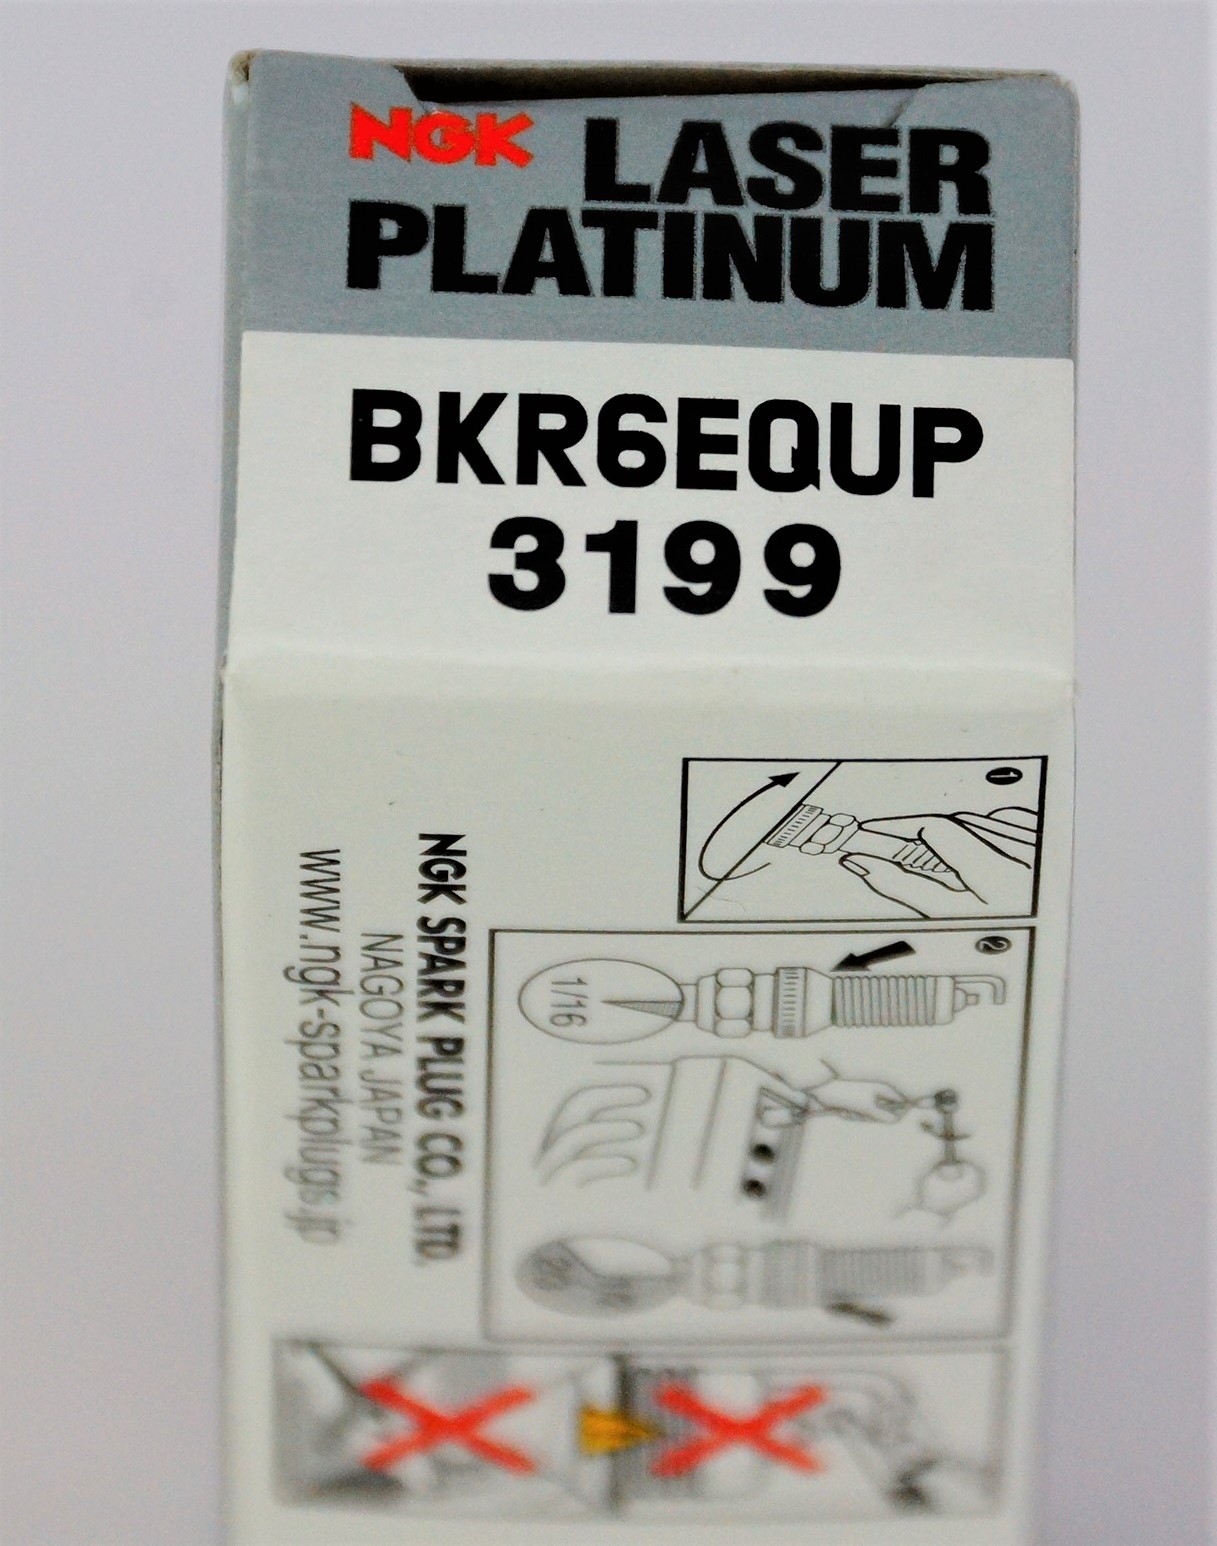 Set of 10 NGK 3199 Laser Platinum Spark Plugs BKR6EQUP - image 6